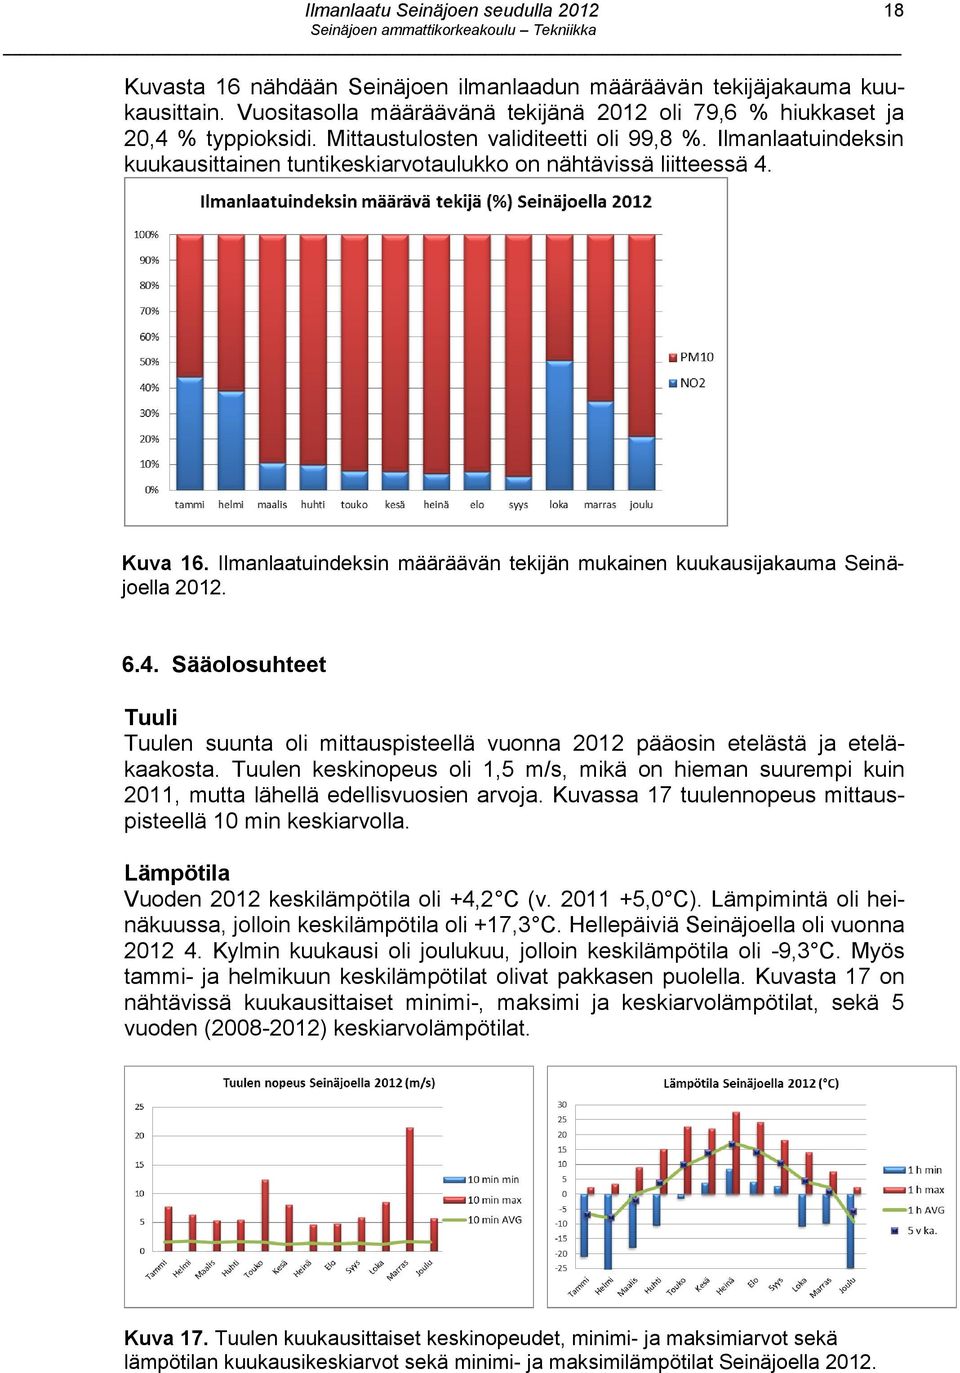 Ilmanlaatuindeksin määräävän tekijän mukainen kuukausijakauma Seinäjoella 2012. 6.4. Sääolosuhteet Tuuli Tuulen suunta oli mittauspisteellä vuonna 2012 pääosin etelästä ja eteläkaakosta.